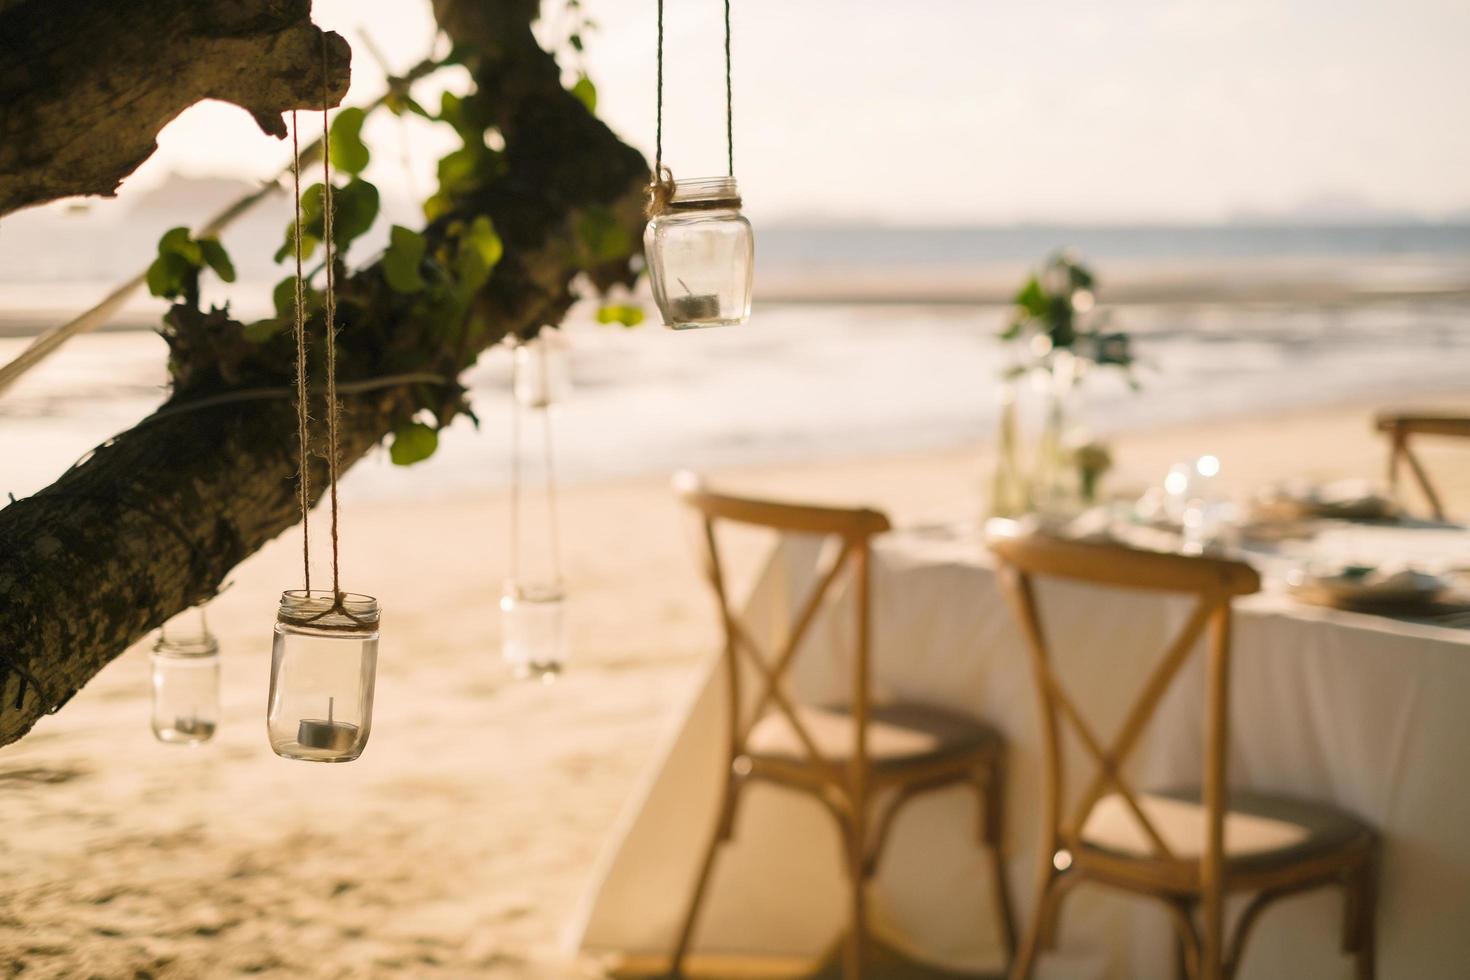 Cierra la vela del tarro que cuelga del árbol con una mesa larga para la cena de bodas en la playa de Tailandia por la noche. concepto de fiesta de bodas. decoración restaurante al aire libre en la playa. foto